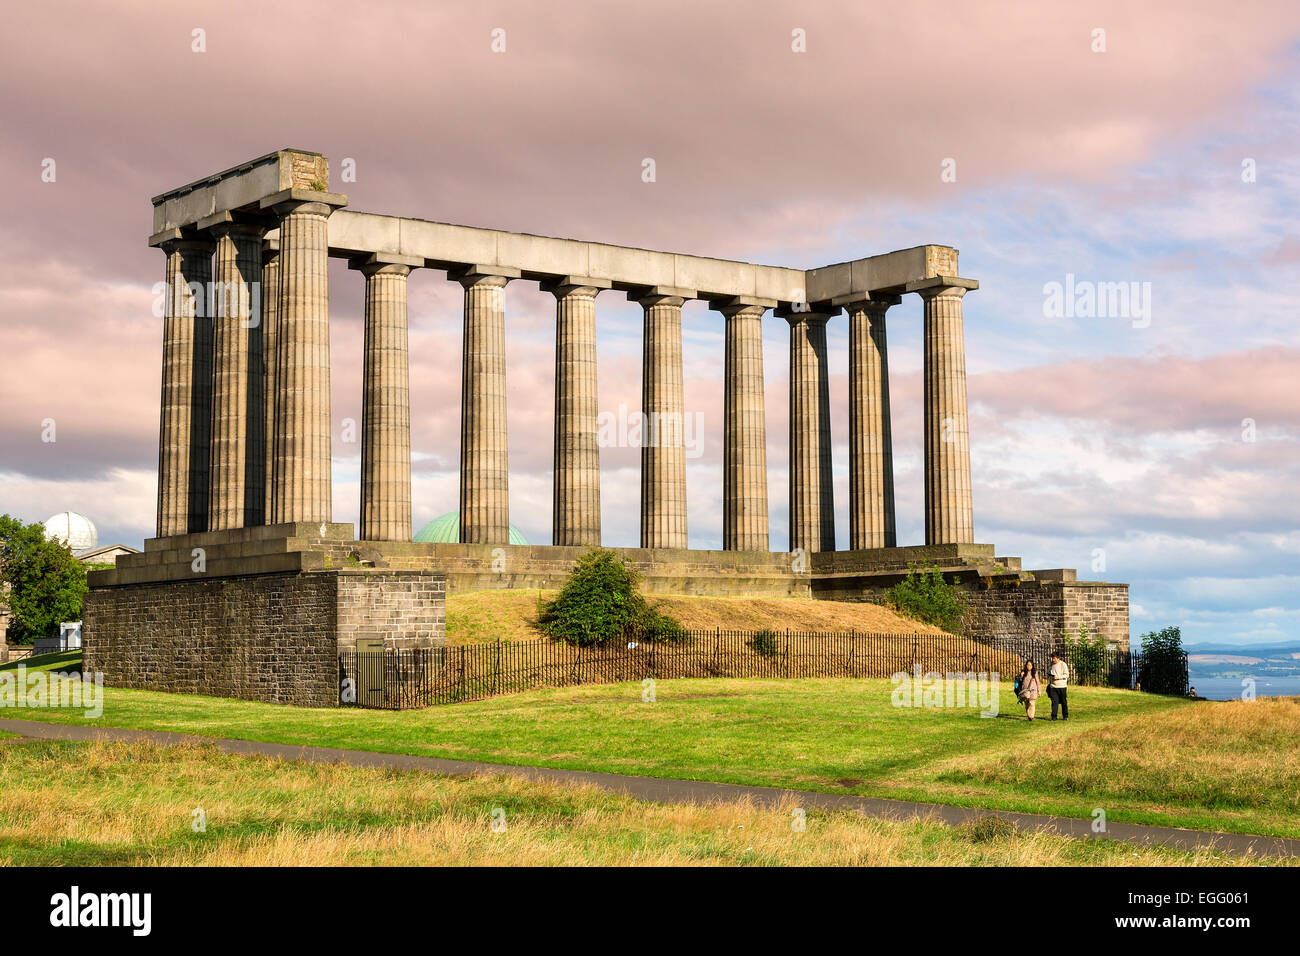 Piliers du monument national, Edinburgh, Ecosse, Royaume-Uni Banque D'Images